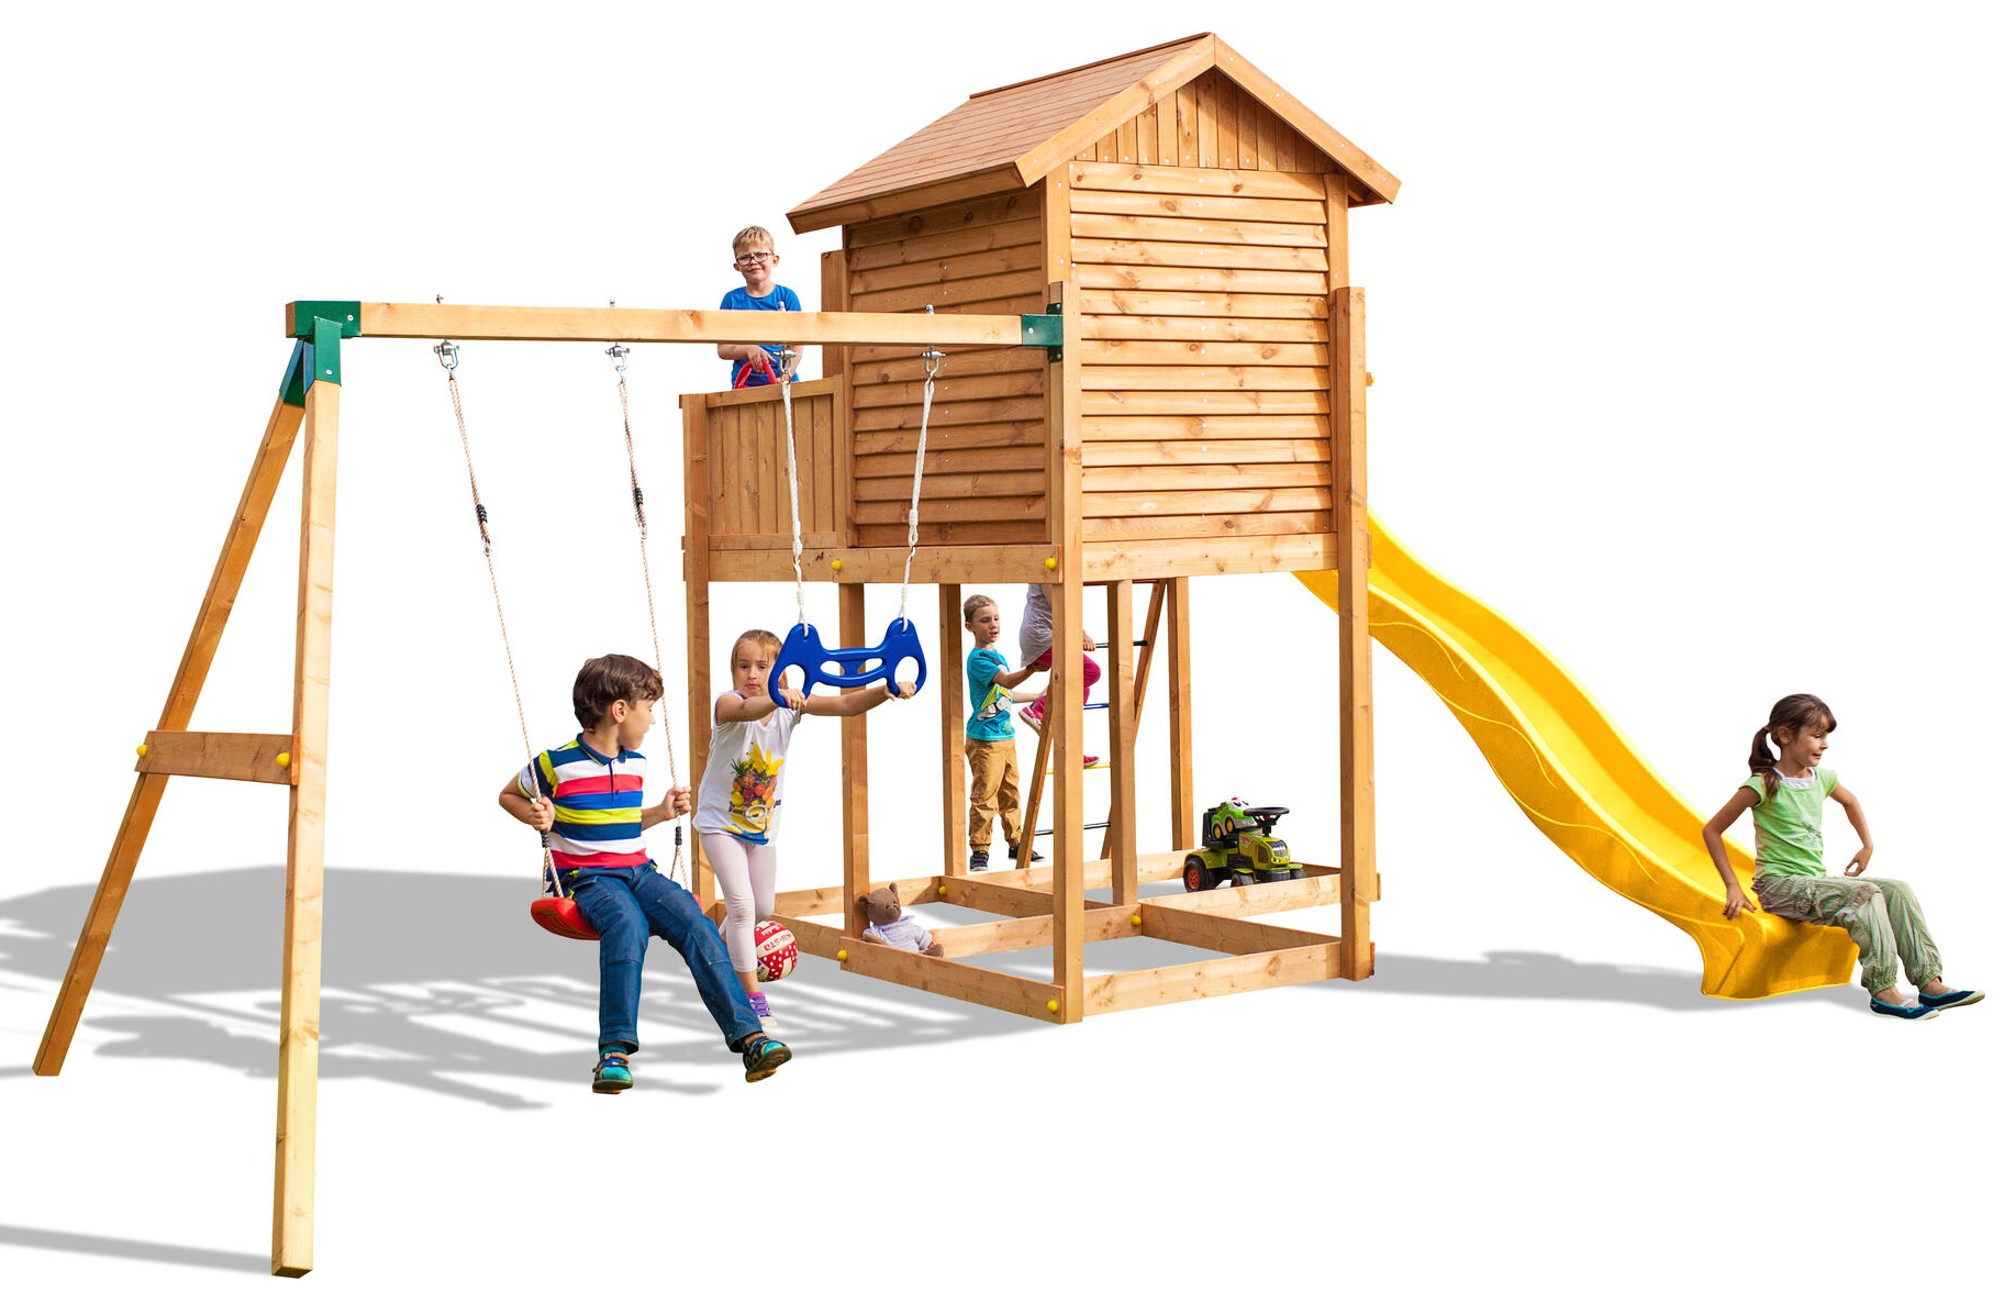 Plac zabaw drewniany ogrodowy Move MySide domek, zjedalnia XXL, 2x hutawka, drabinka, akcesoria